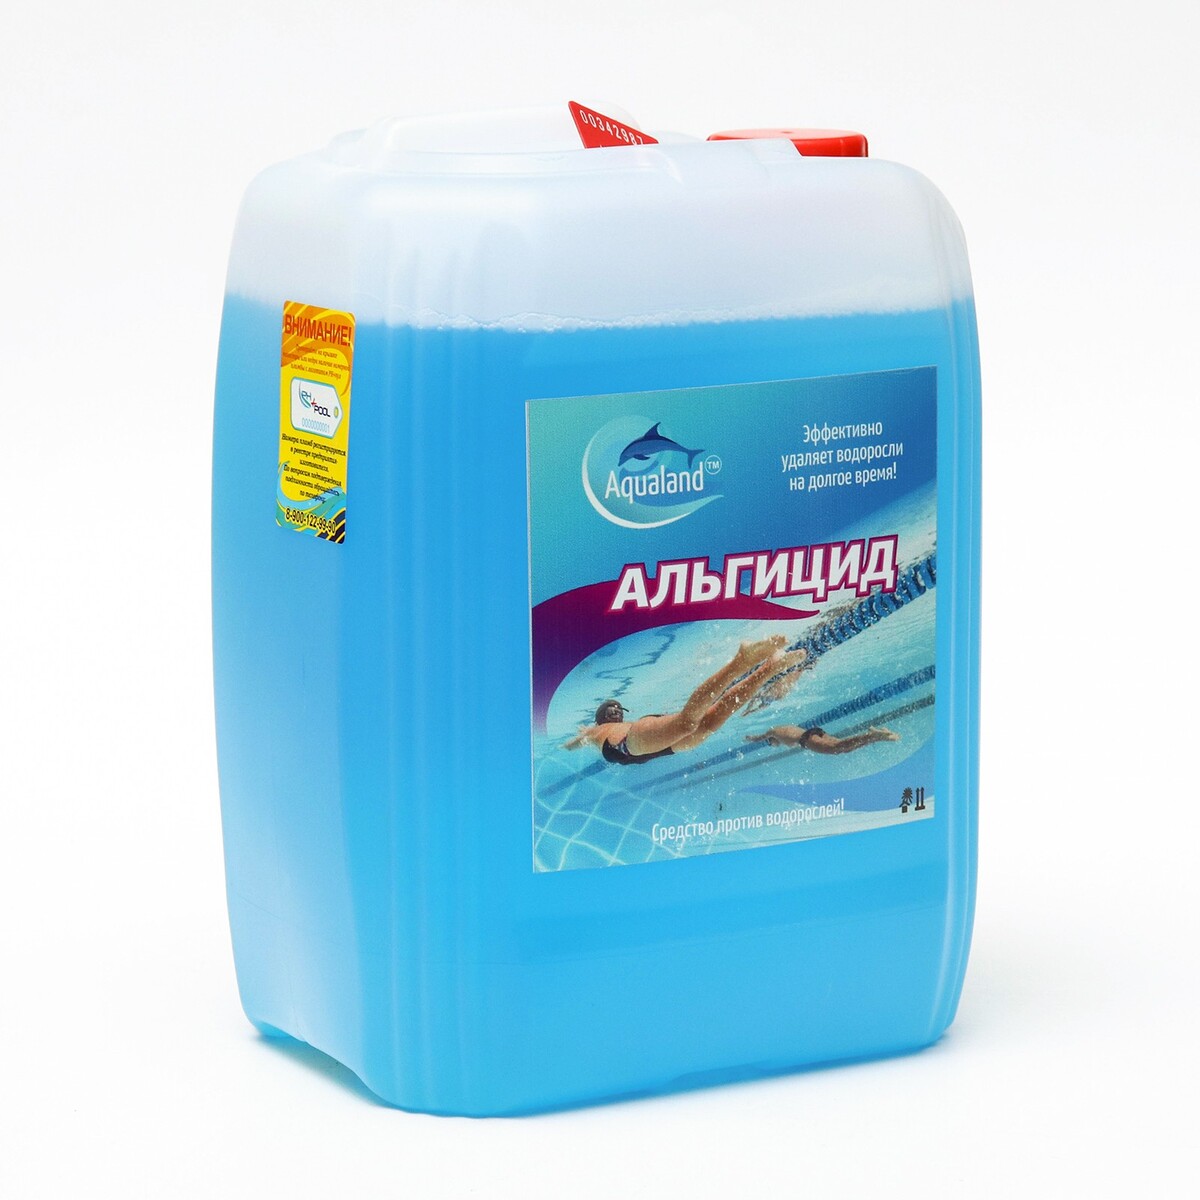 Средство против водорослей aqualand, альгицид, 5 л жидкий хлор aqualand 5 л